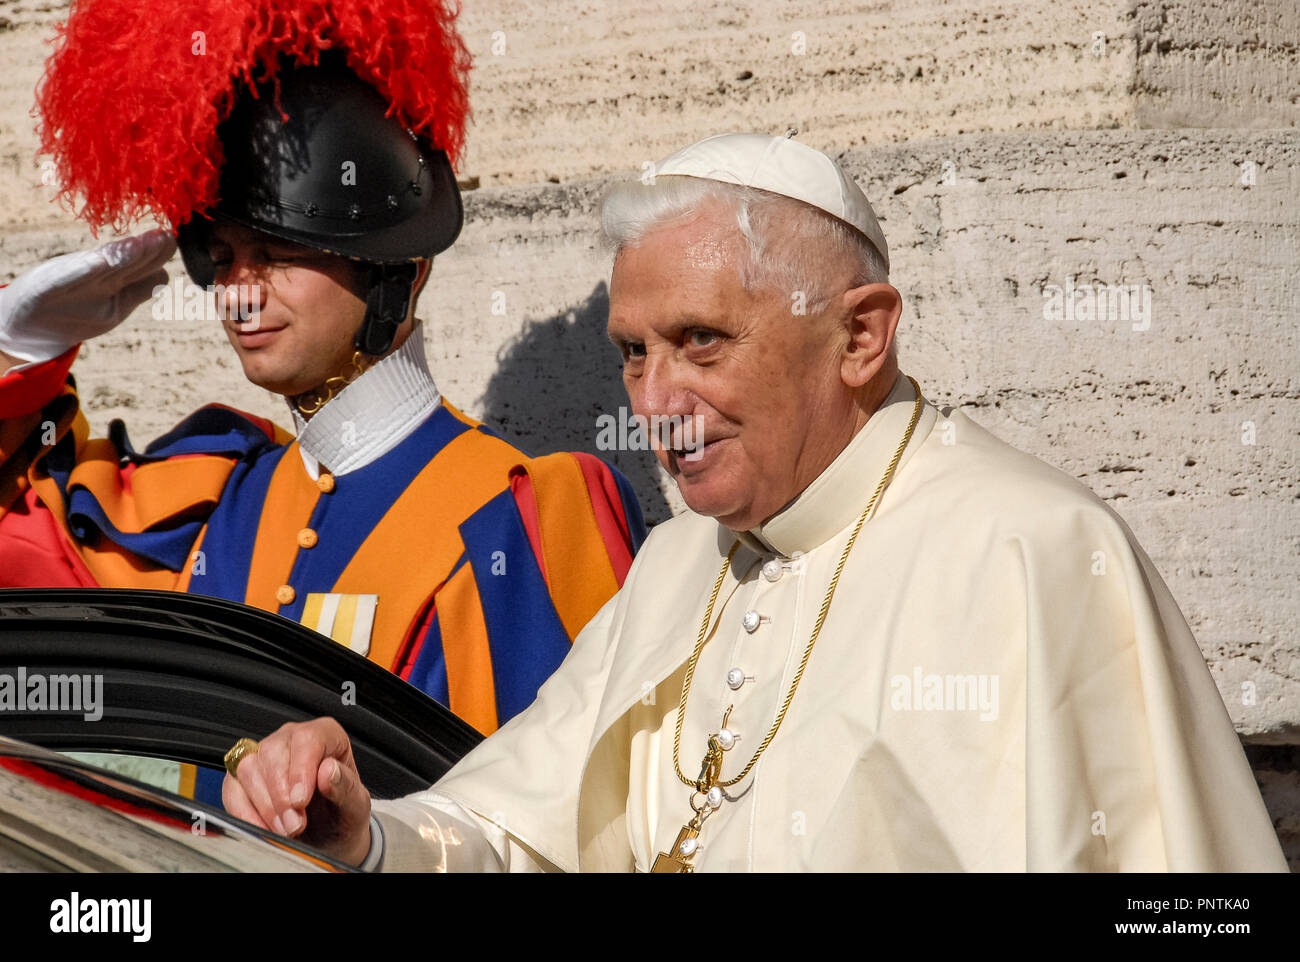 Vatican City Pope Benedict XVI 05/11/2007 12:46:07 Stock Photo